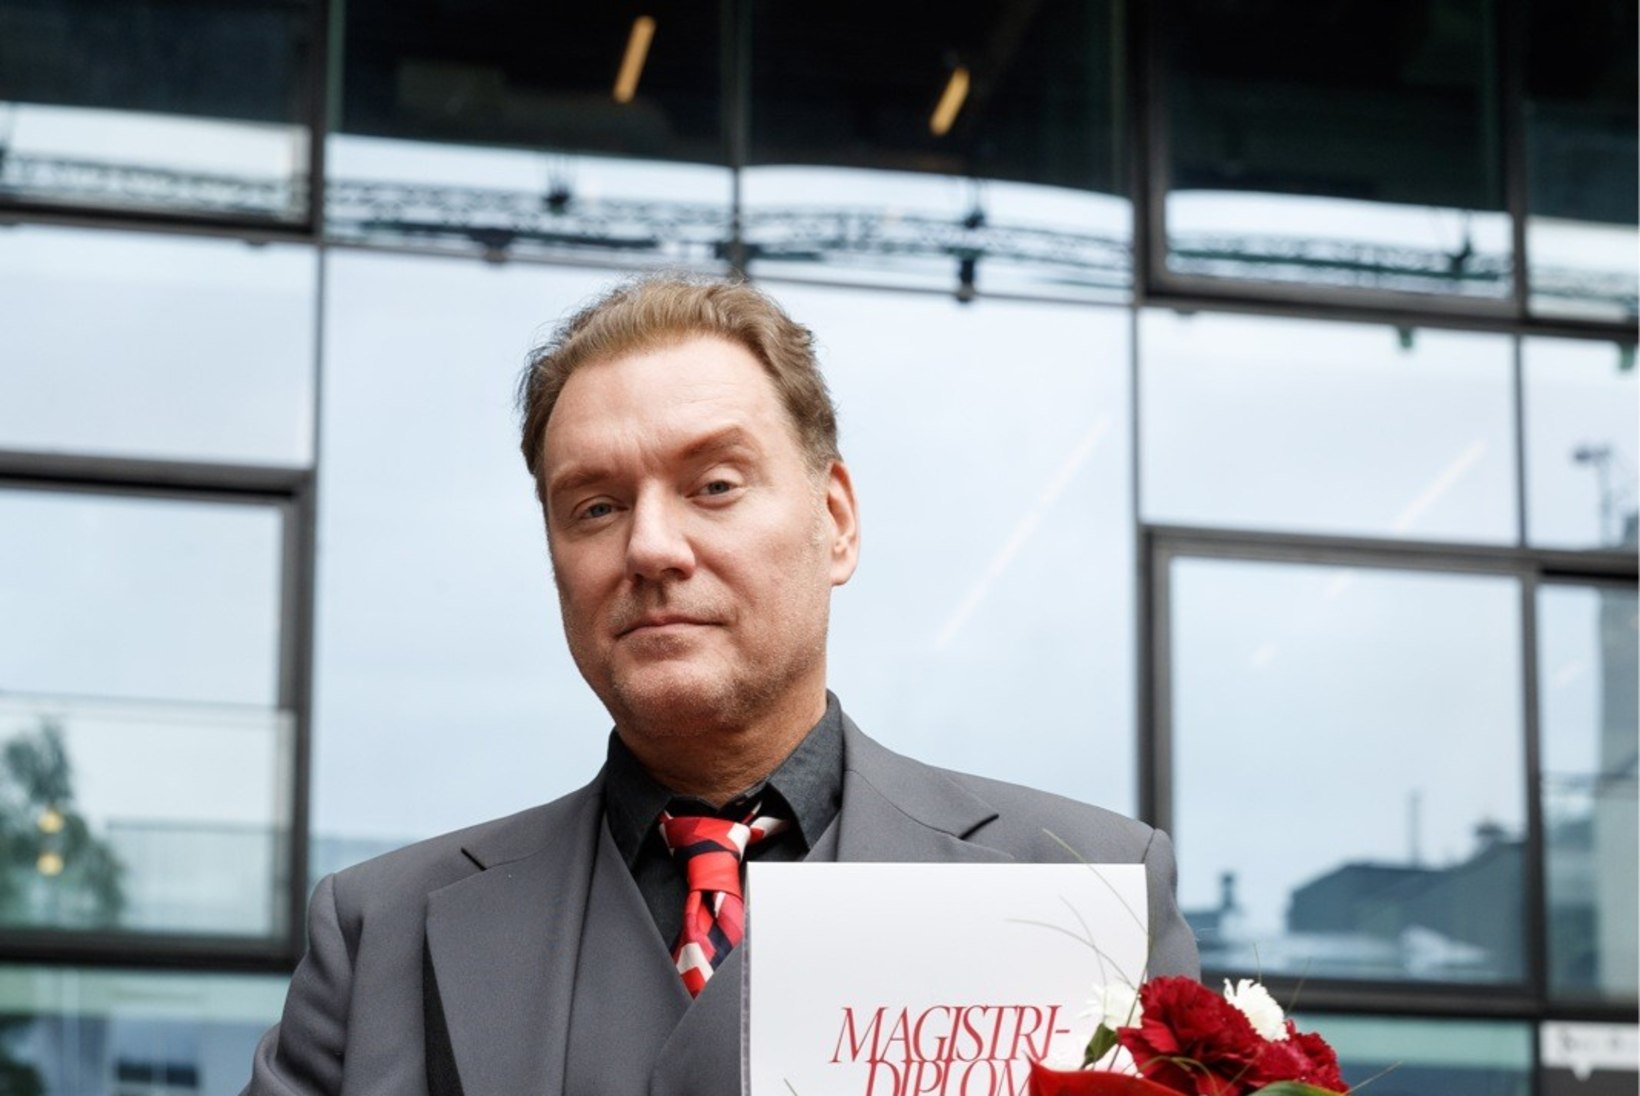 FOTOD | Mart Sander sai magistrikraadi: režissööriks õppimine on mul võtnud 26 aastat